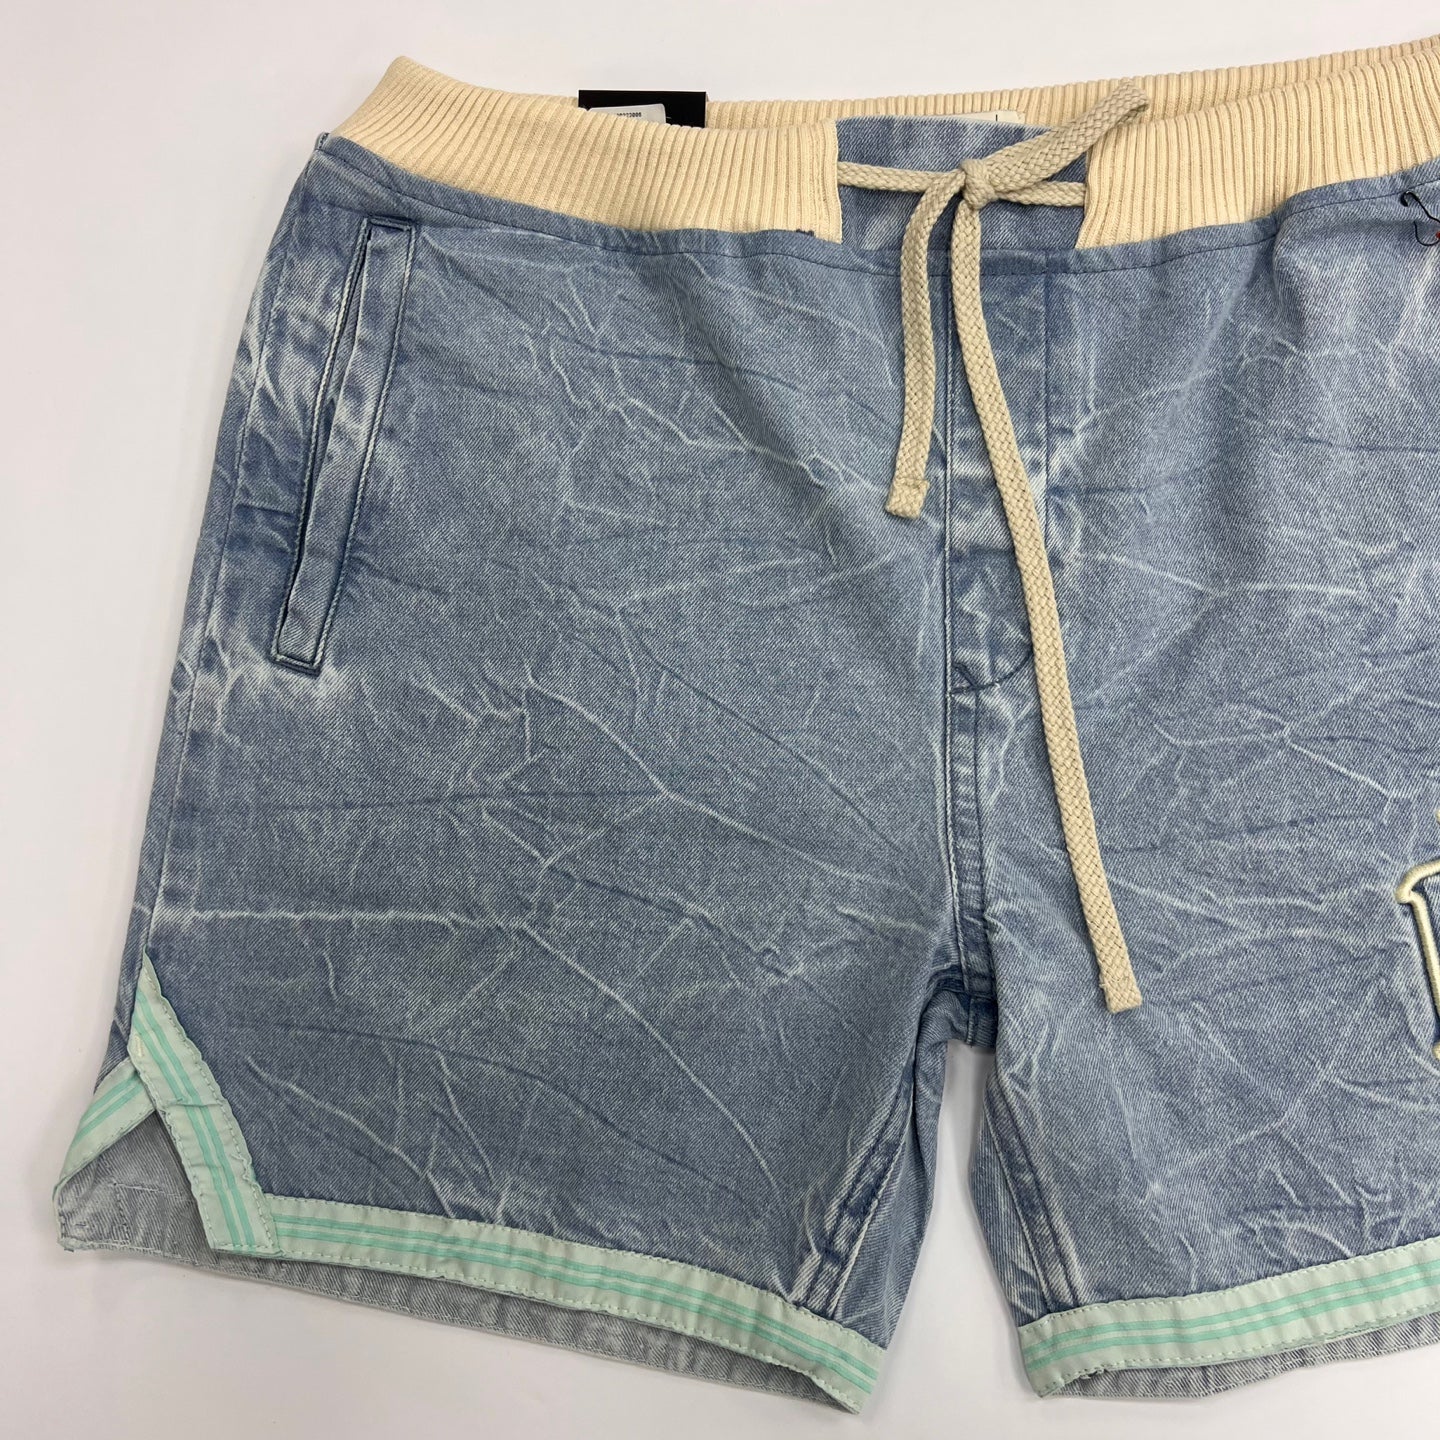 Men's Acid Washed Shorts - Light Blue